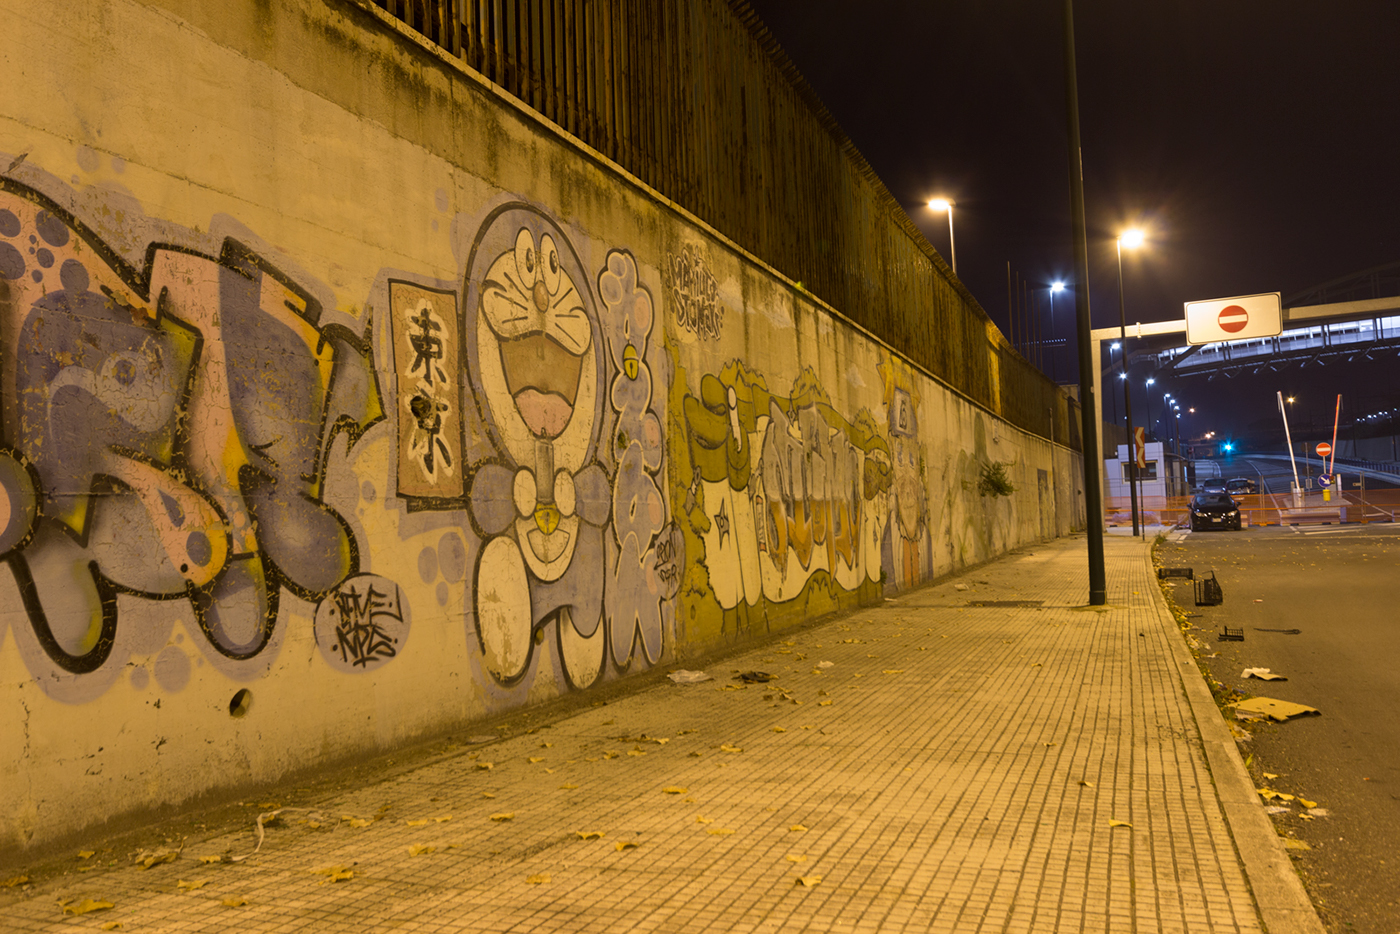 NAPOLI ponticelli Graffiti